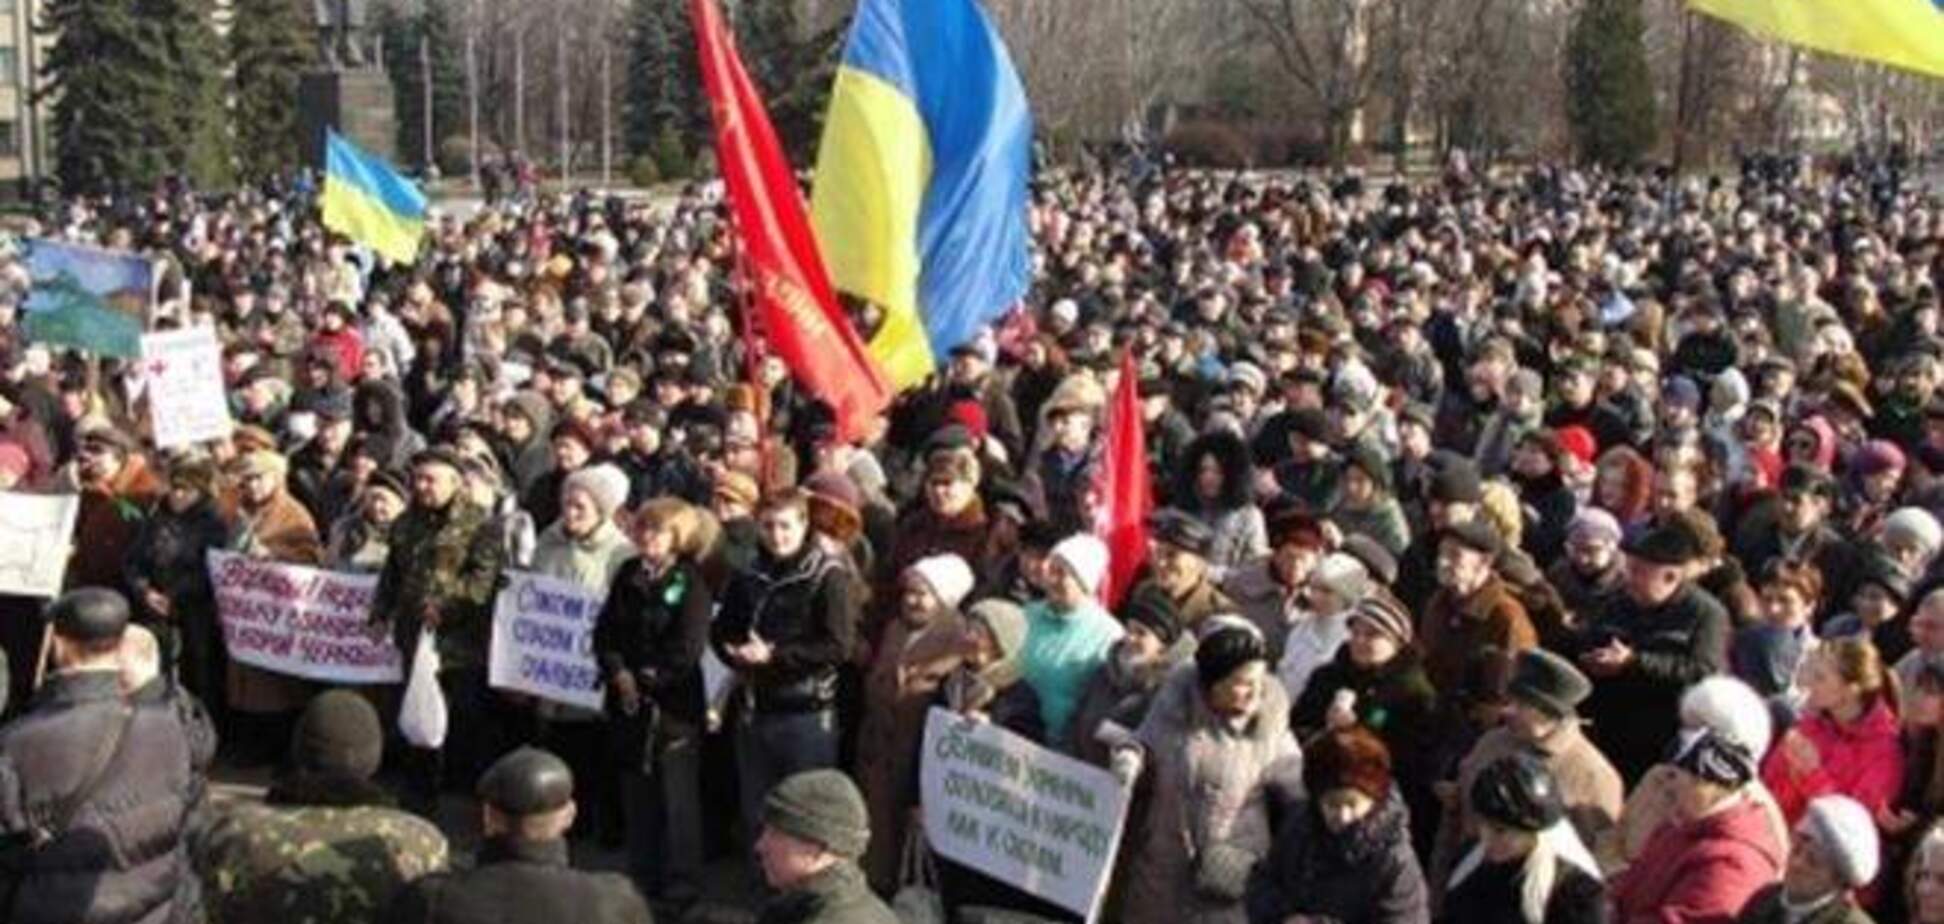 66% донеччан виступають за єдність України - опитування